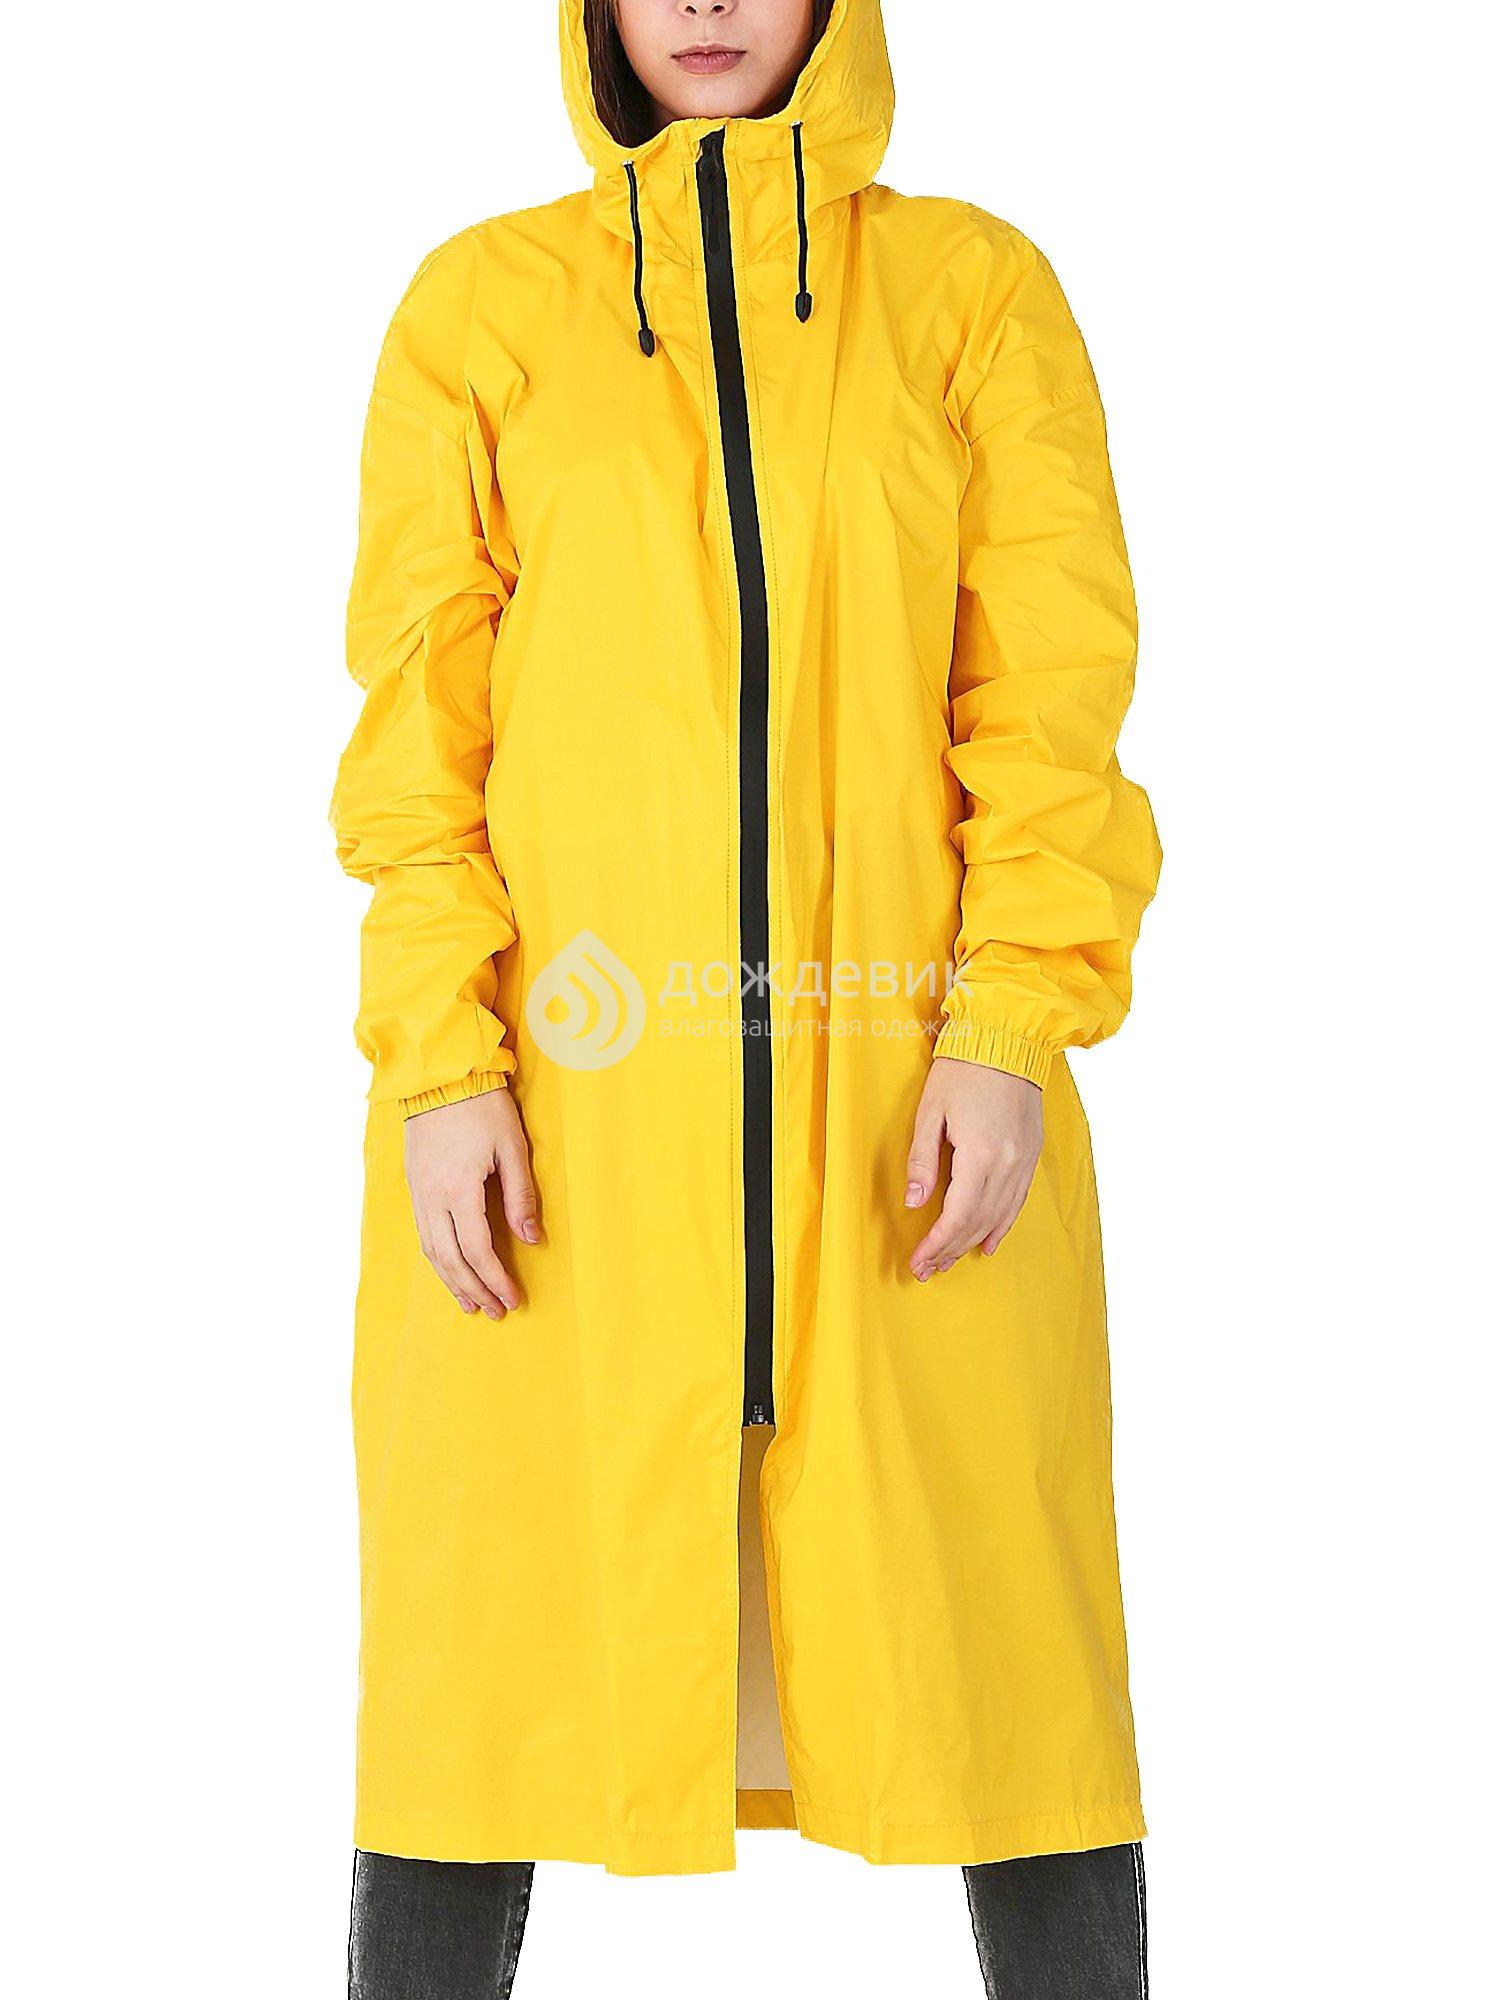 Плащ-дождевик «Ультра» модный с высоким воротом желтый